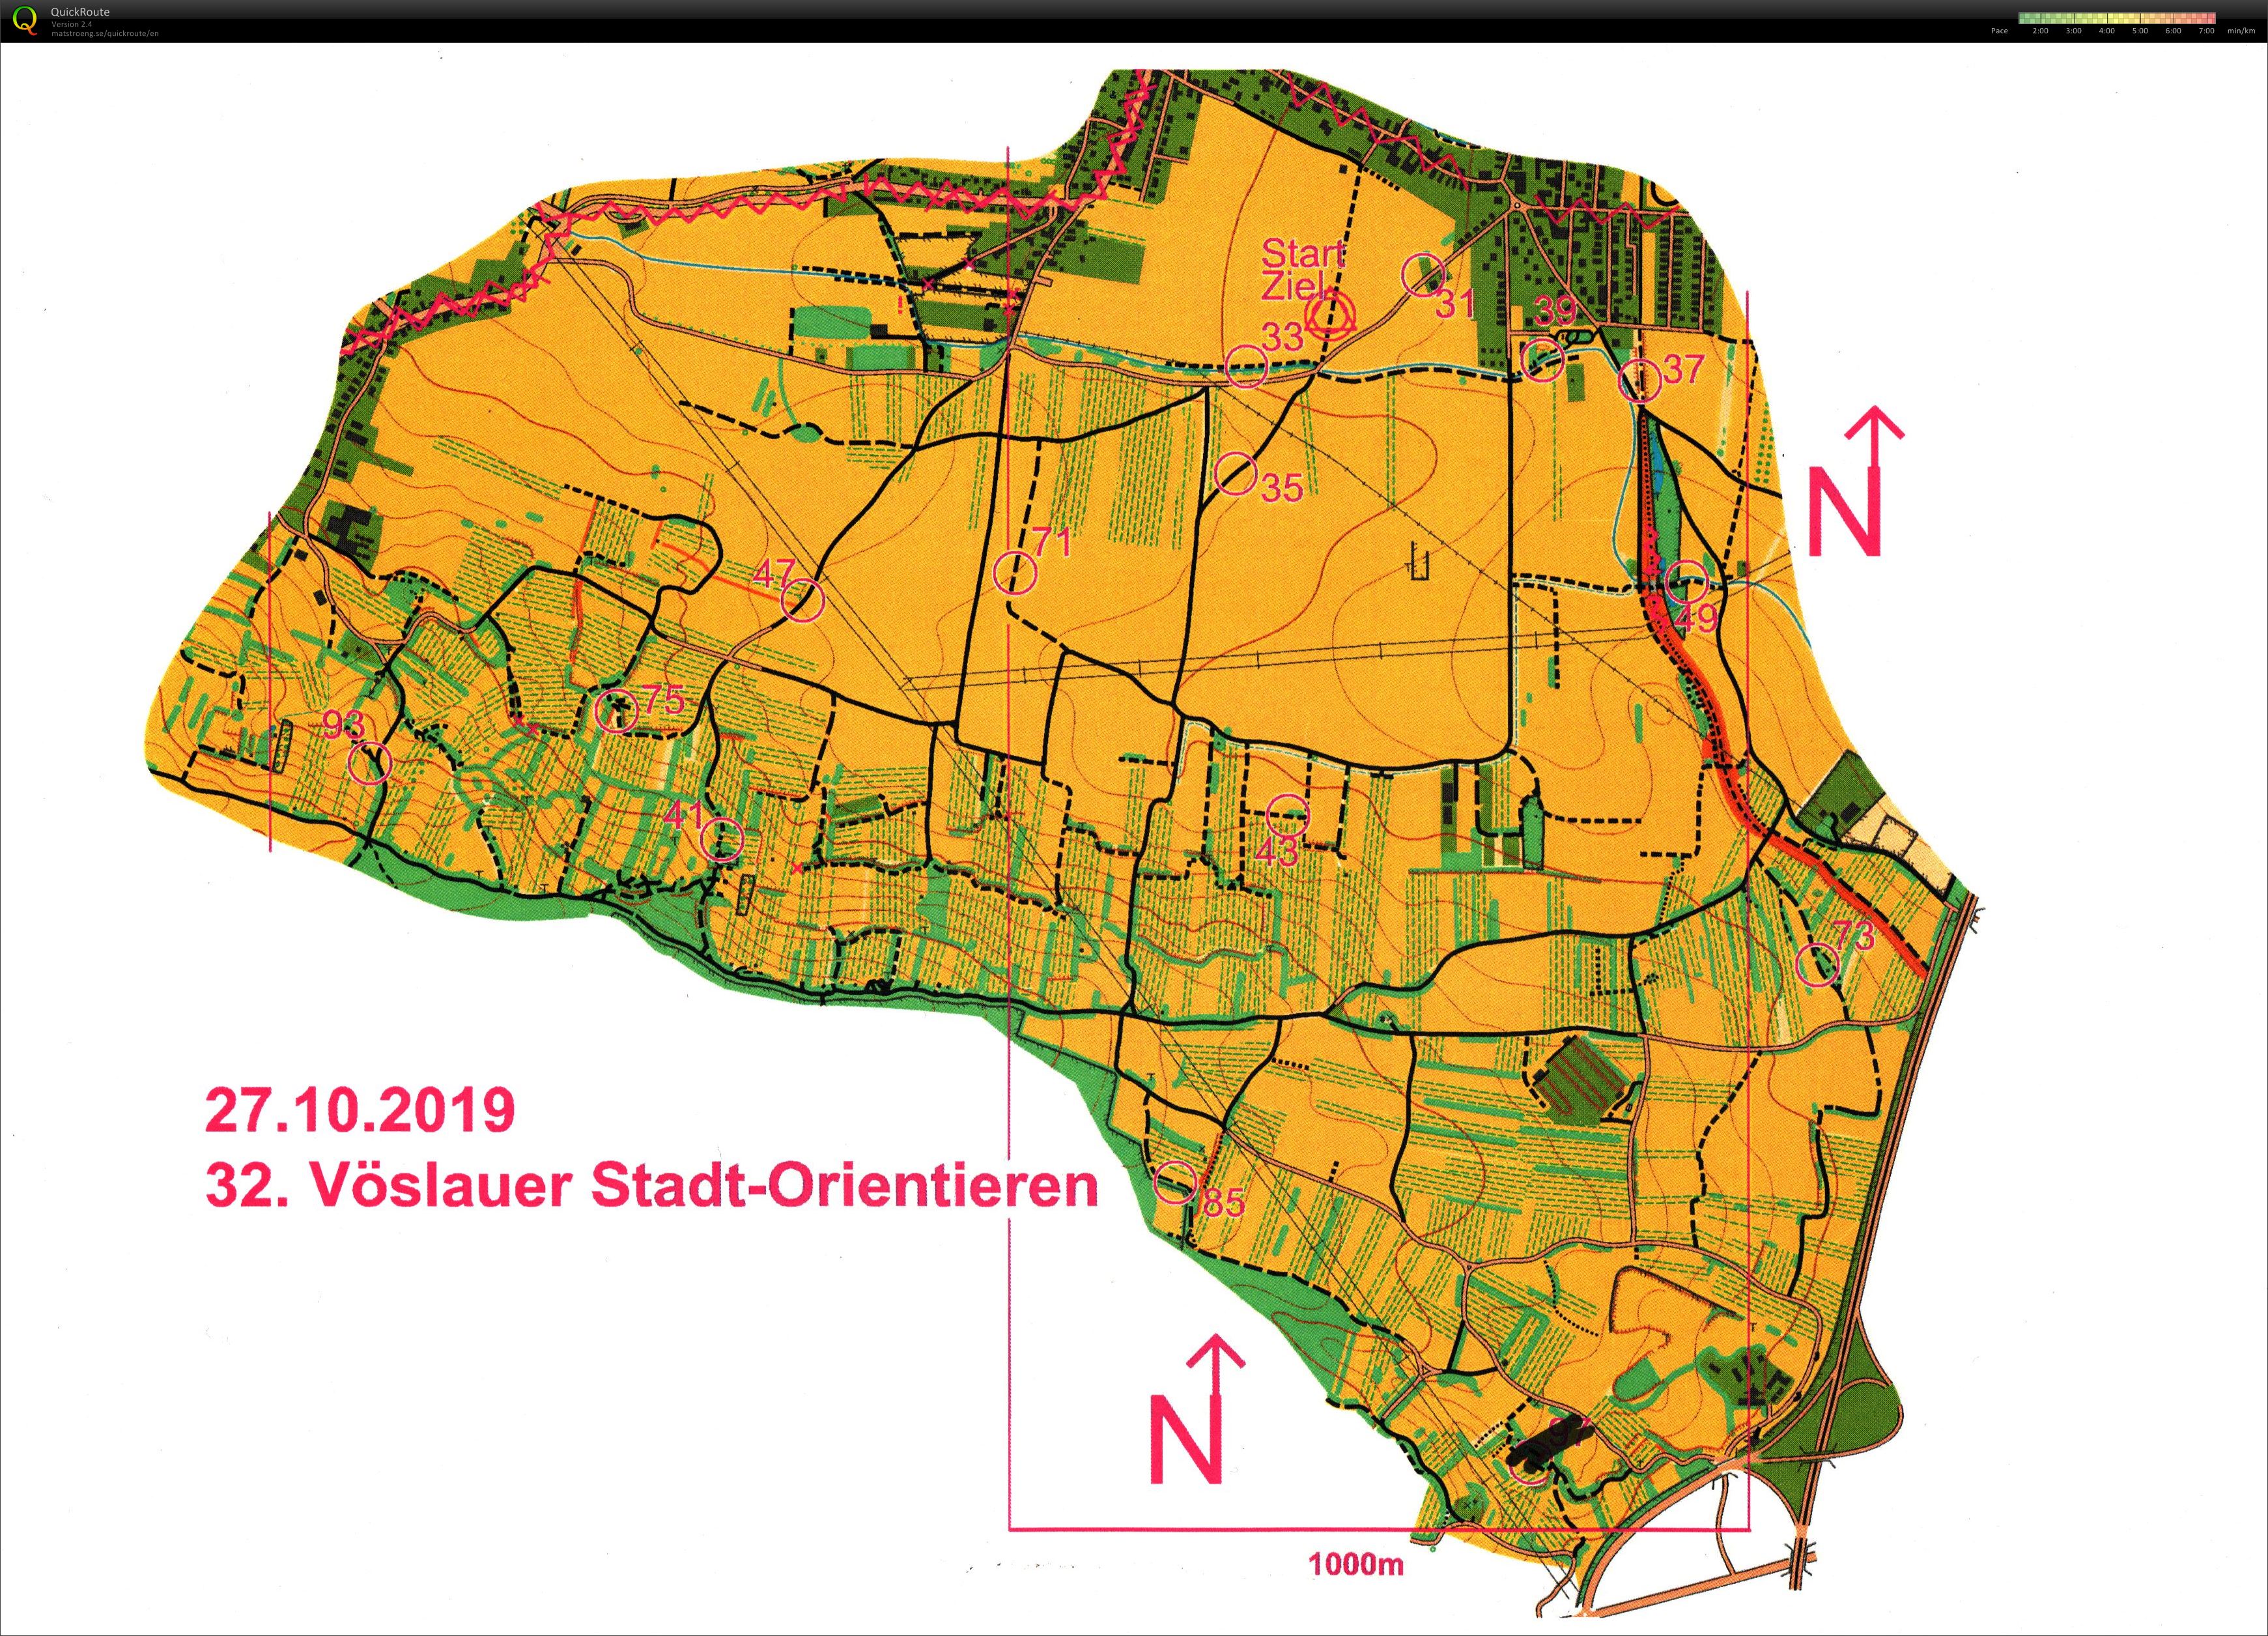 Vöslauer Stadt-Orientieren (27-10-2019)